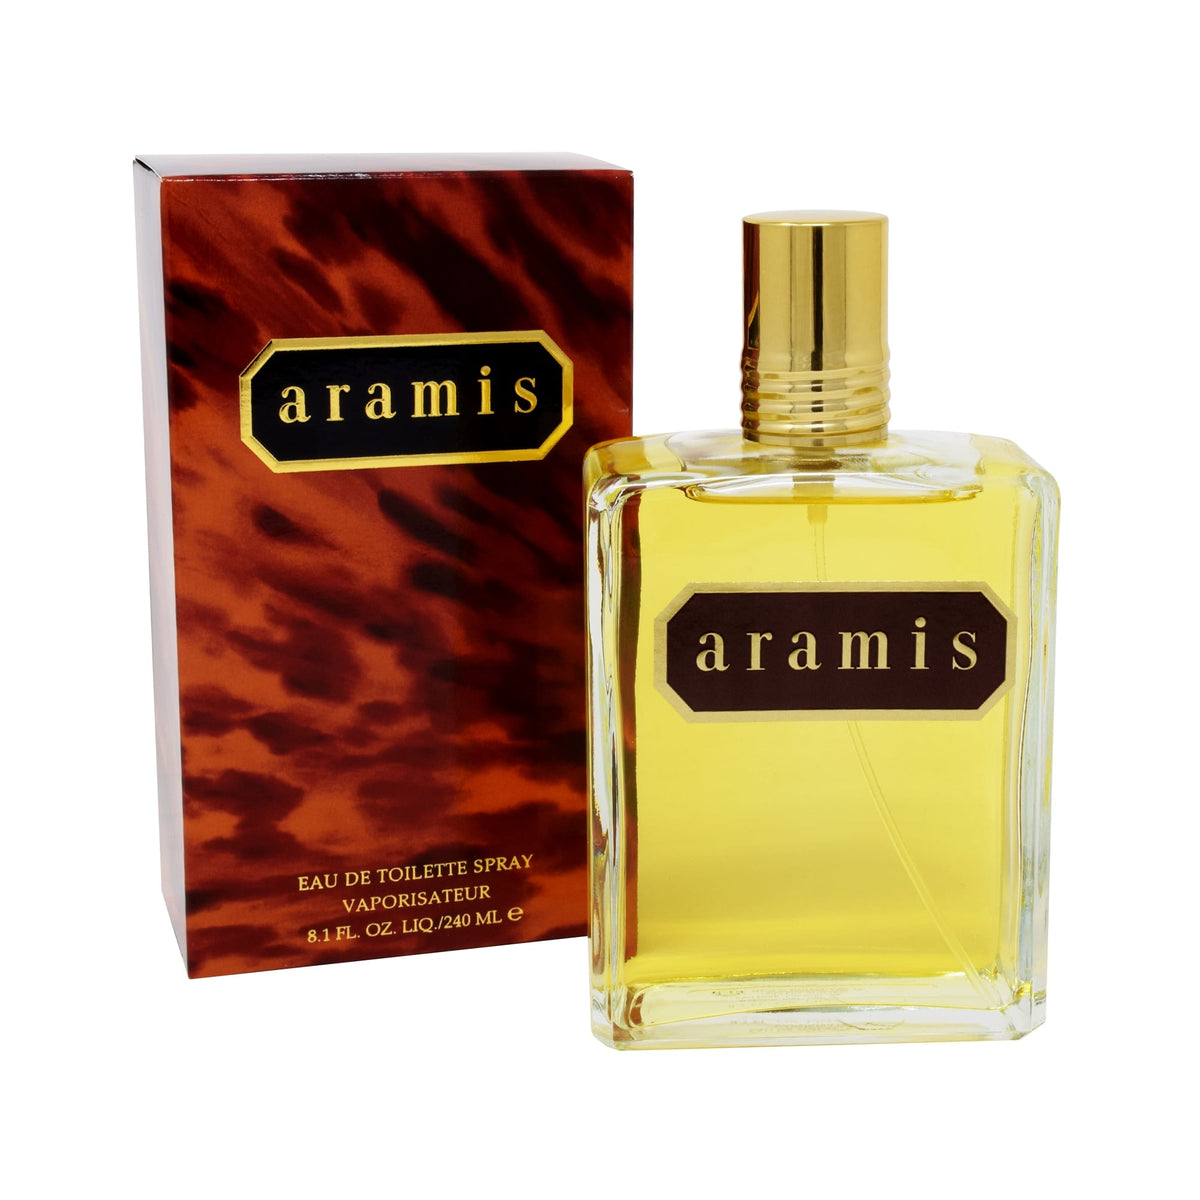 Perfume de hombre Aramis eau de toilette 240ml